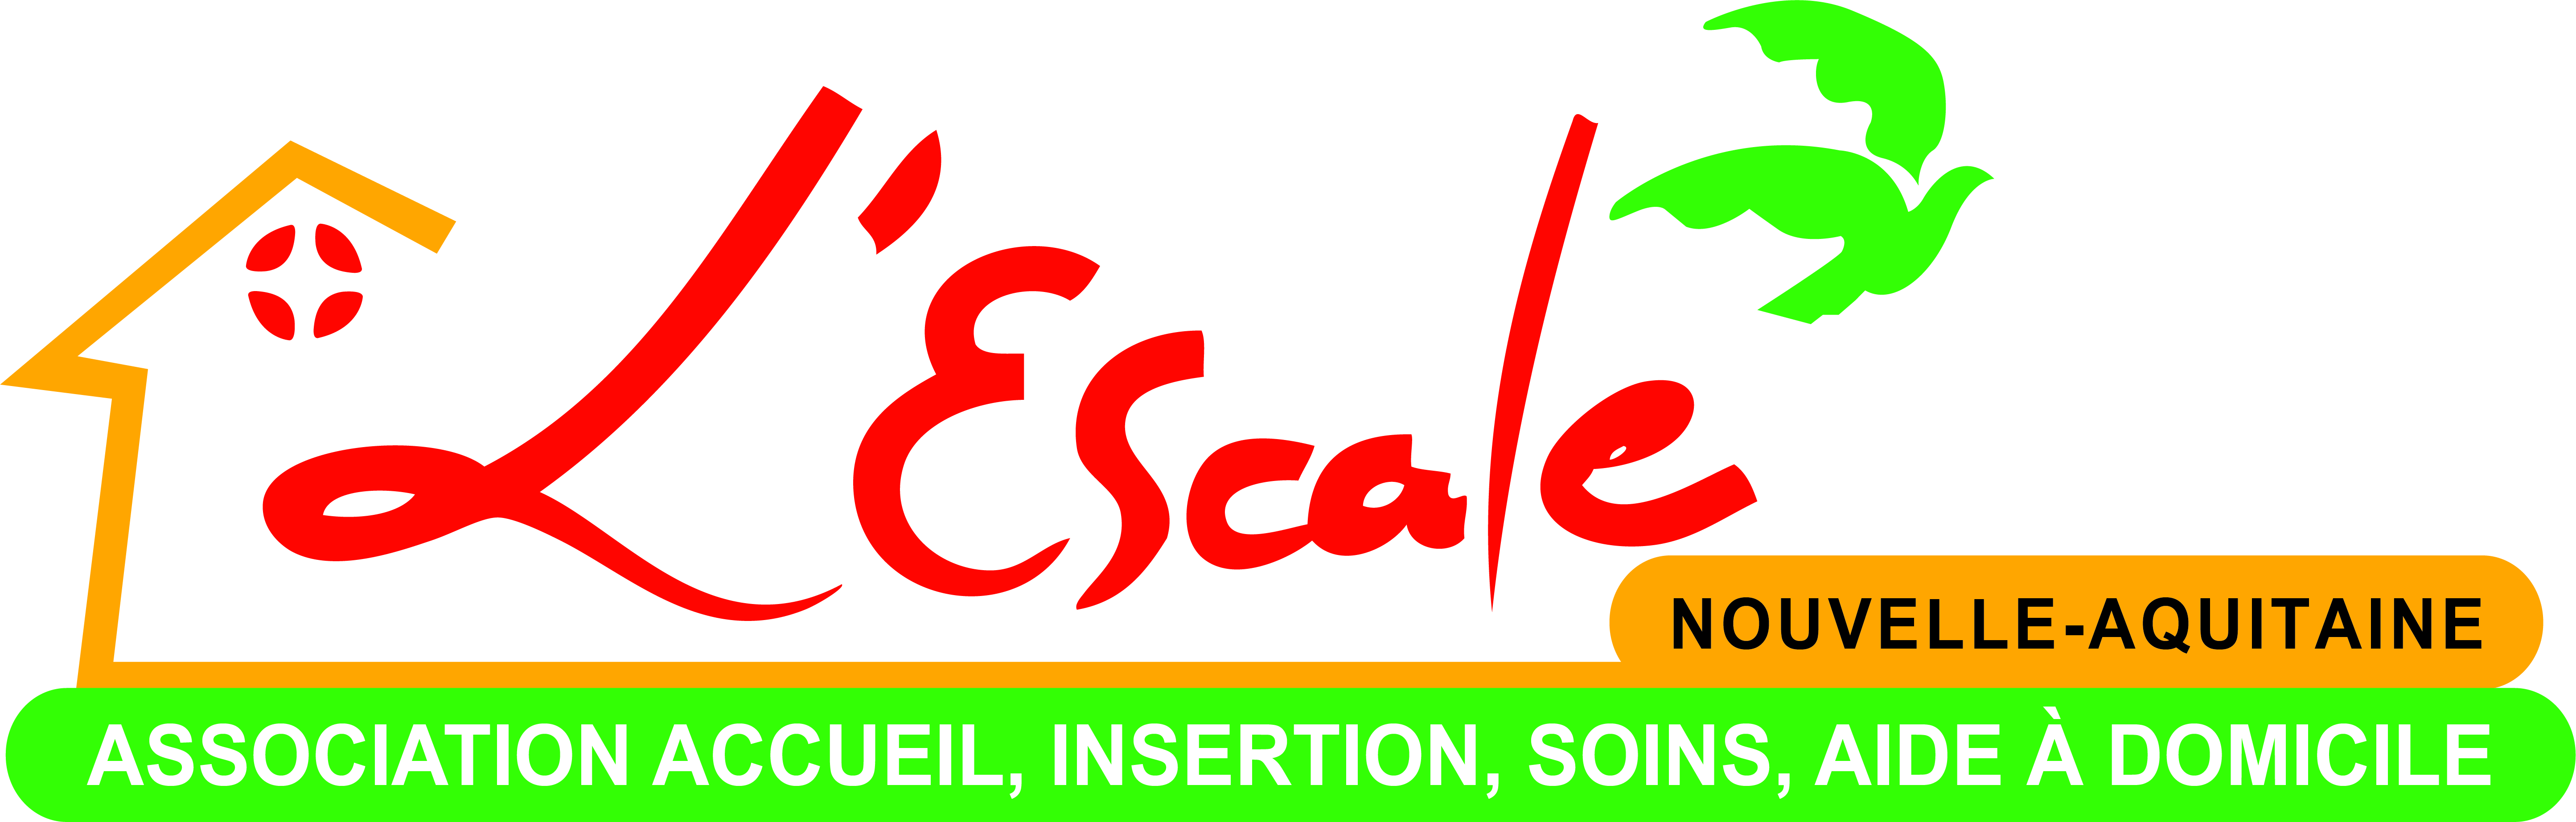 logo_2028_logo_escale_2020.jpg